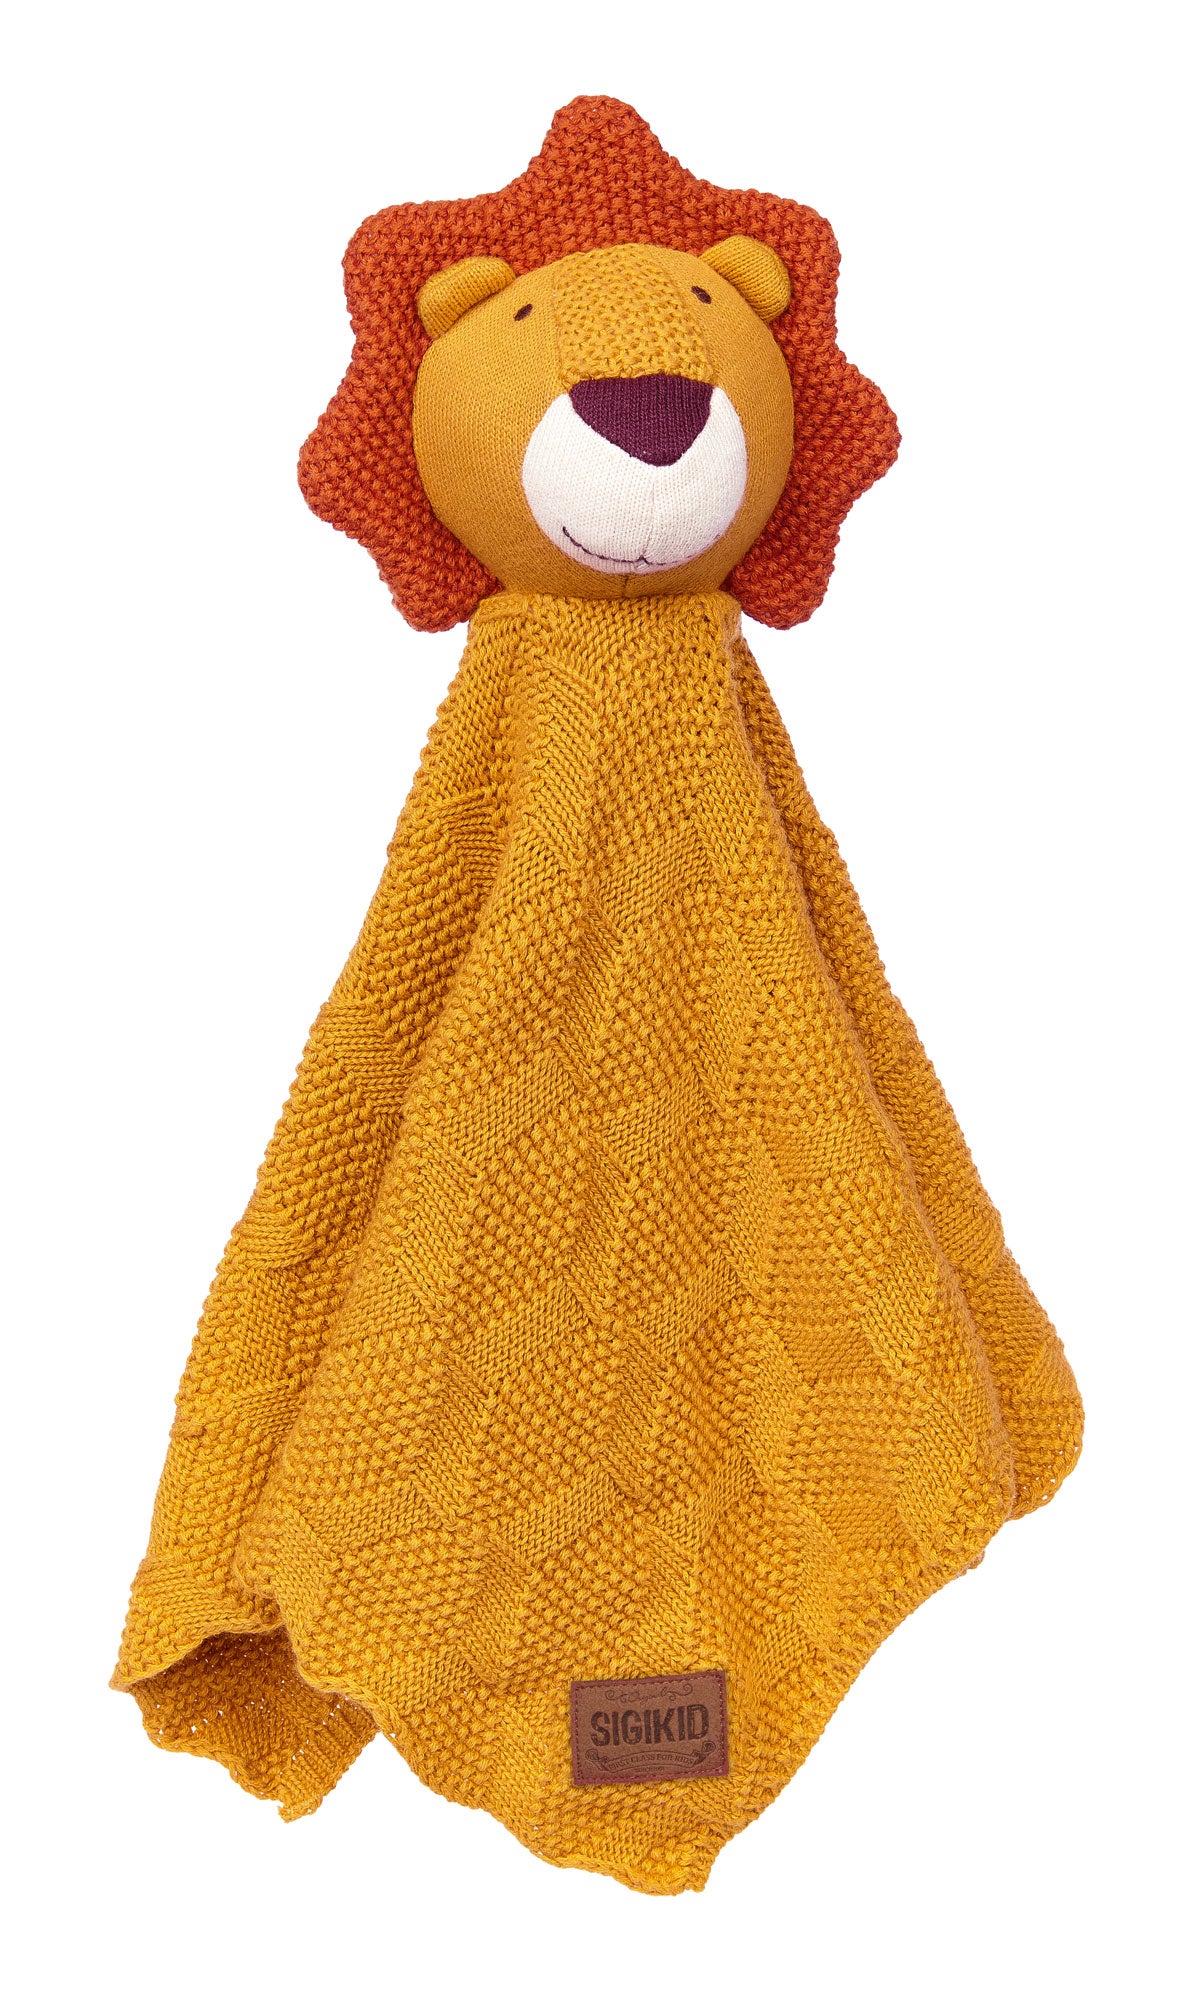 Dieser Löwe ist komplett aus reiner Baumwolle gestrickt, Augen und Mund aufgestickt, und seine fluffige Schmusedecke mit Patentstrickmuster. Innenmaterial 100% Polyester